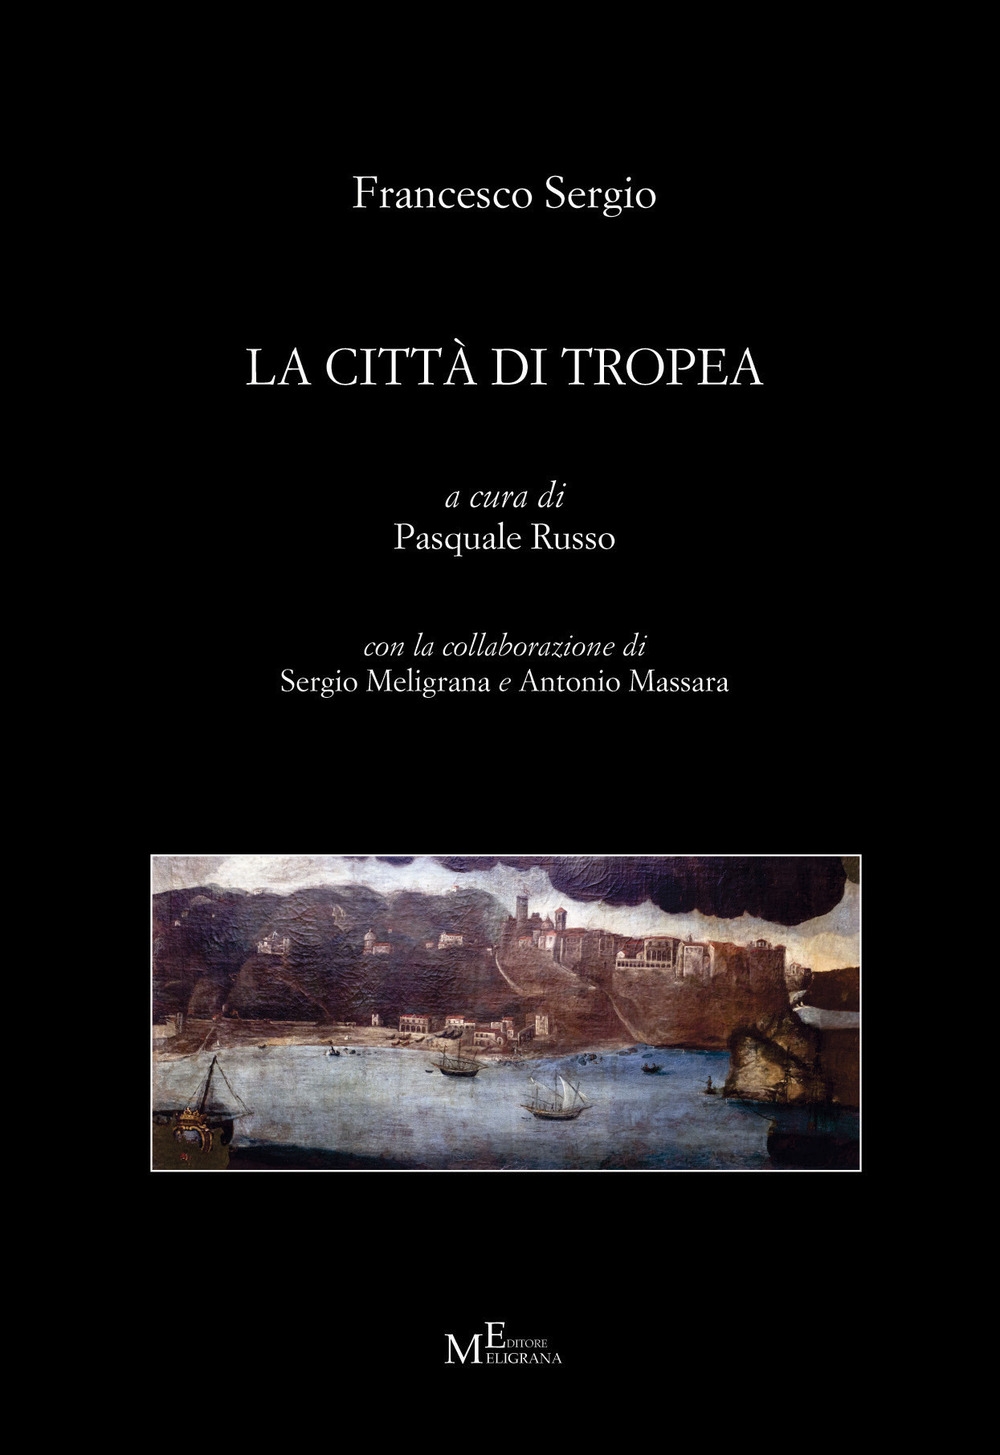 Libri Francesco Sergio - La Citta Di Tropea NUOVO SIGILLATO, EDIZIONE DEL 24/02/2018 SUBITO DISPONIBILE